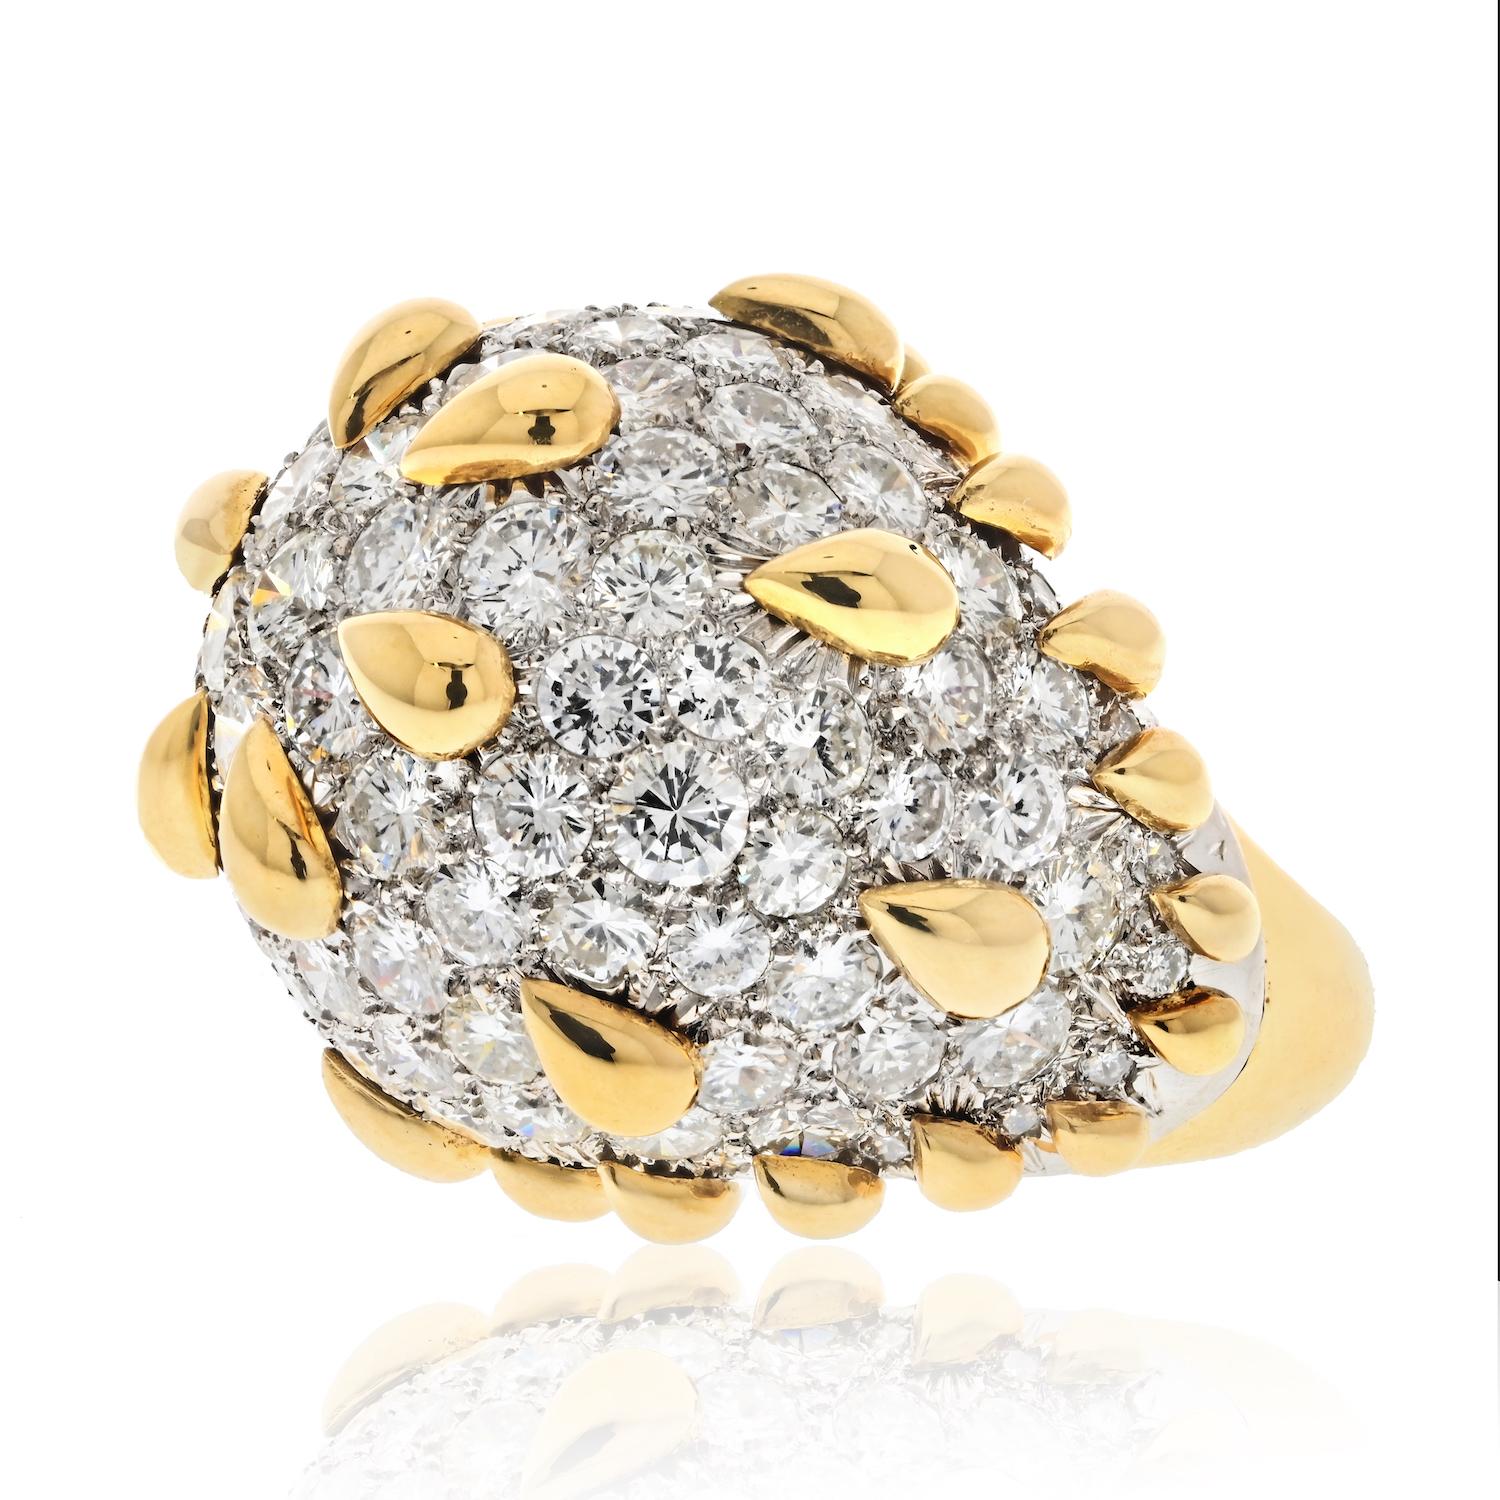 Der von David Webb entworfene Diamant-Kuppelring ist ein wahres Meisterwerk des Schmuckdesigns. Er ist aus Platin und 18 Karat Gelbgold gefertigt, was dem Ring einen klassischen und zeitlosen Charakter verleiht. Der Ring verfügt über eine